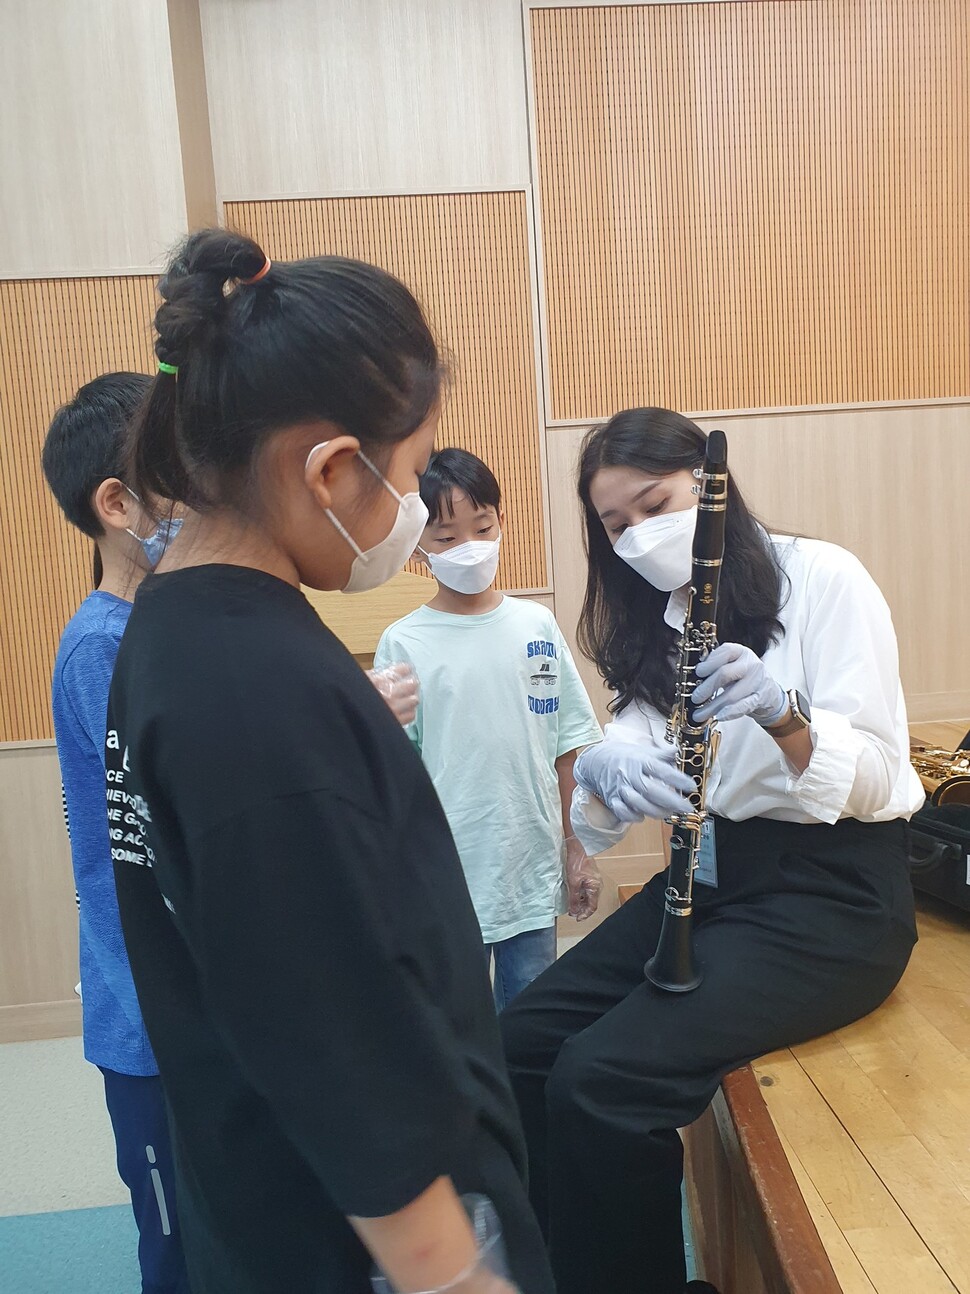 아현초등학교 아이들이 서울윈드오케스트라 단원에게서 클라리넷을 배우고 있다.